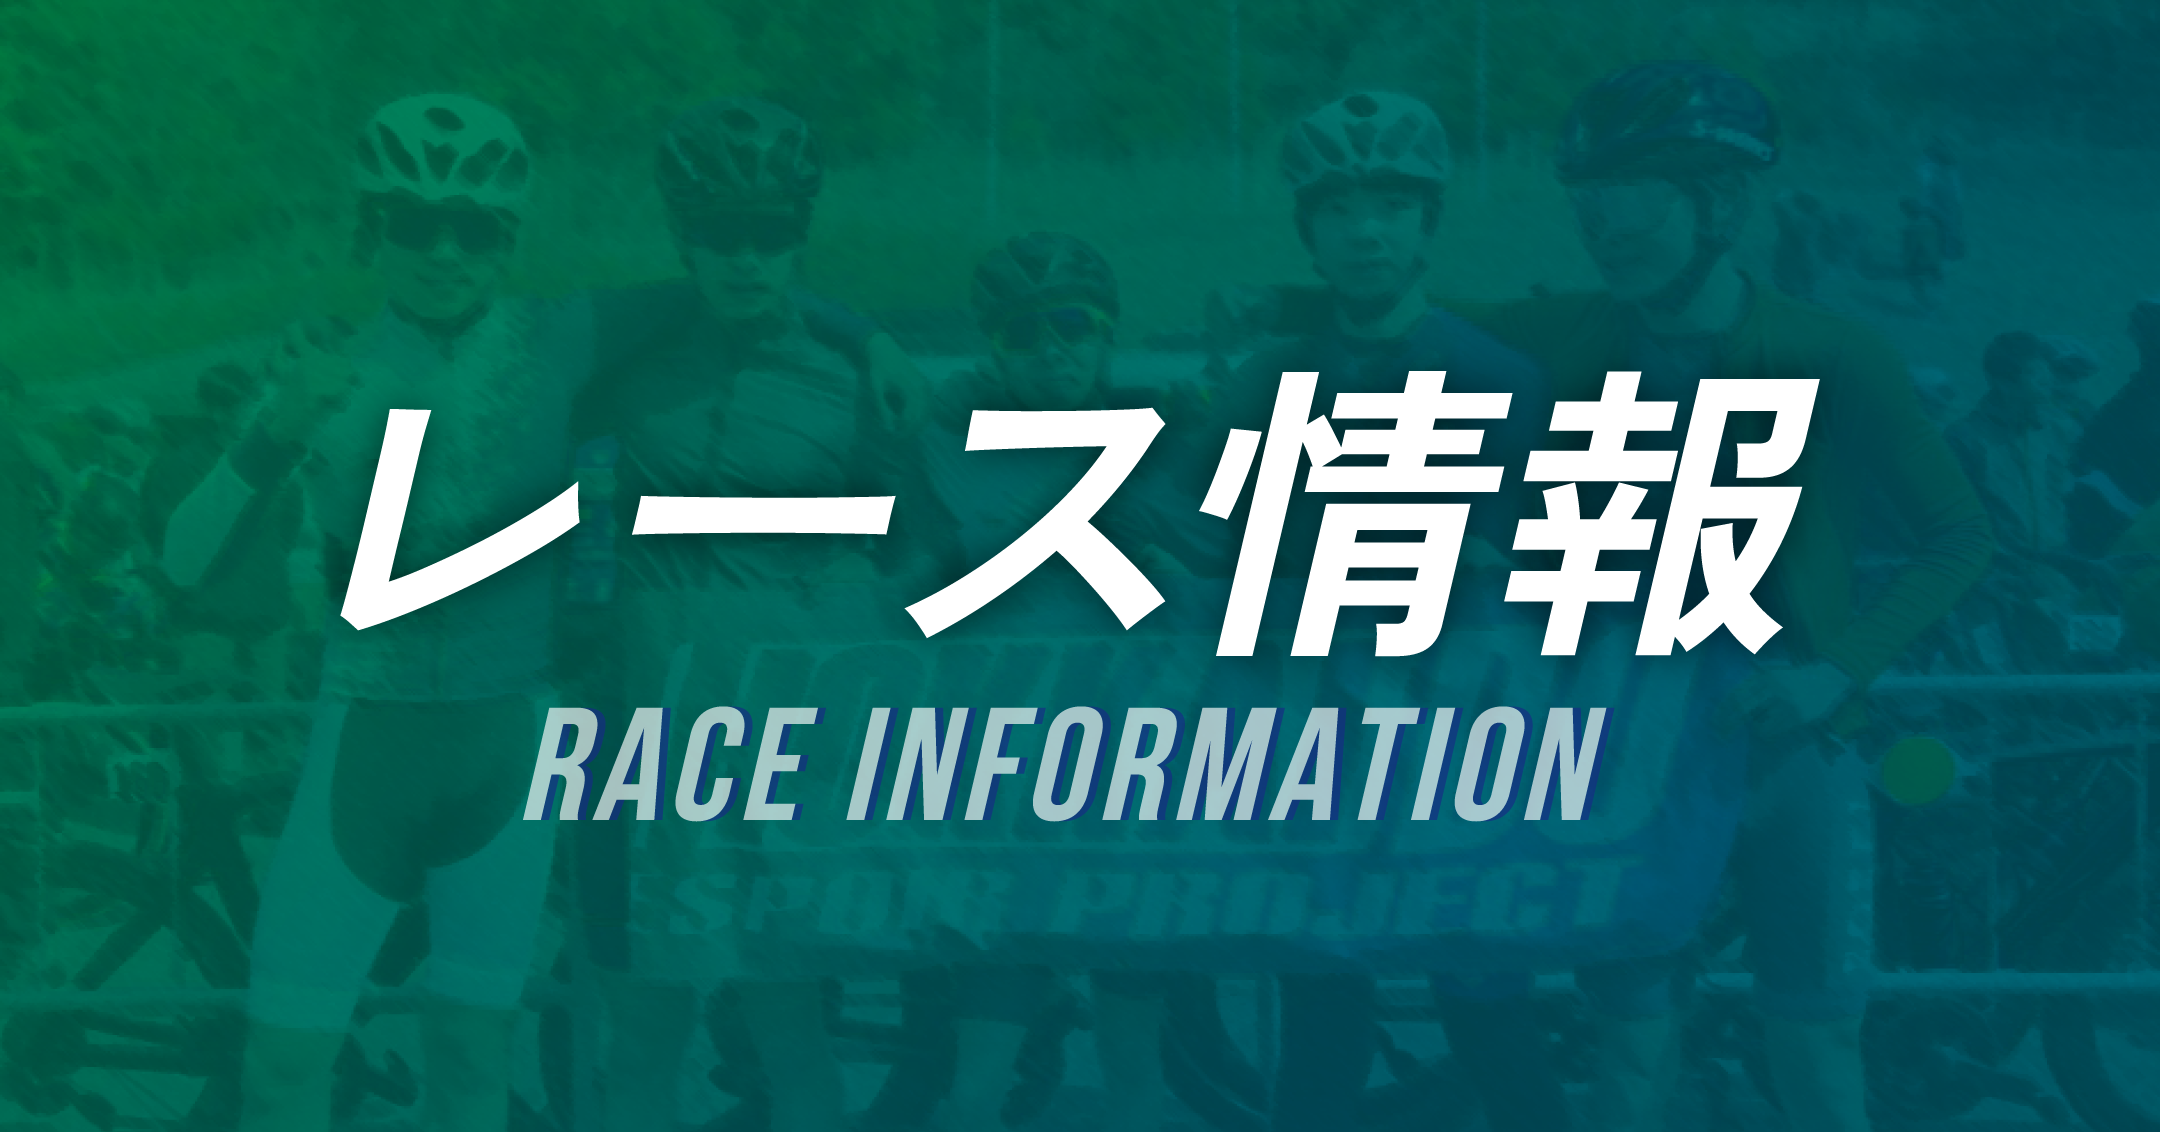 4月13日に静岡県で開催されるチャレンジサイクルロードレースに参戦します。